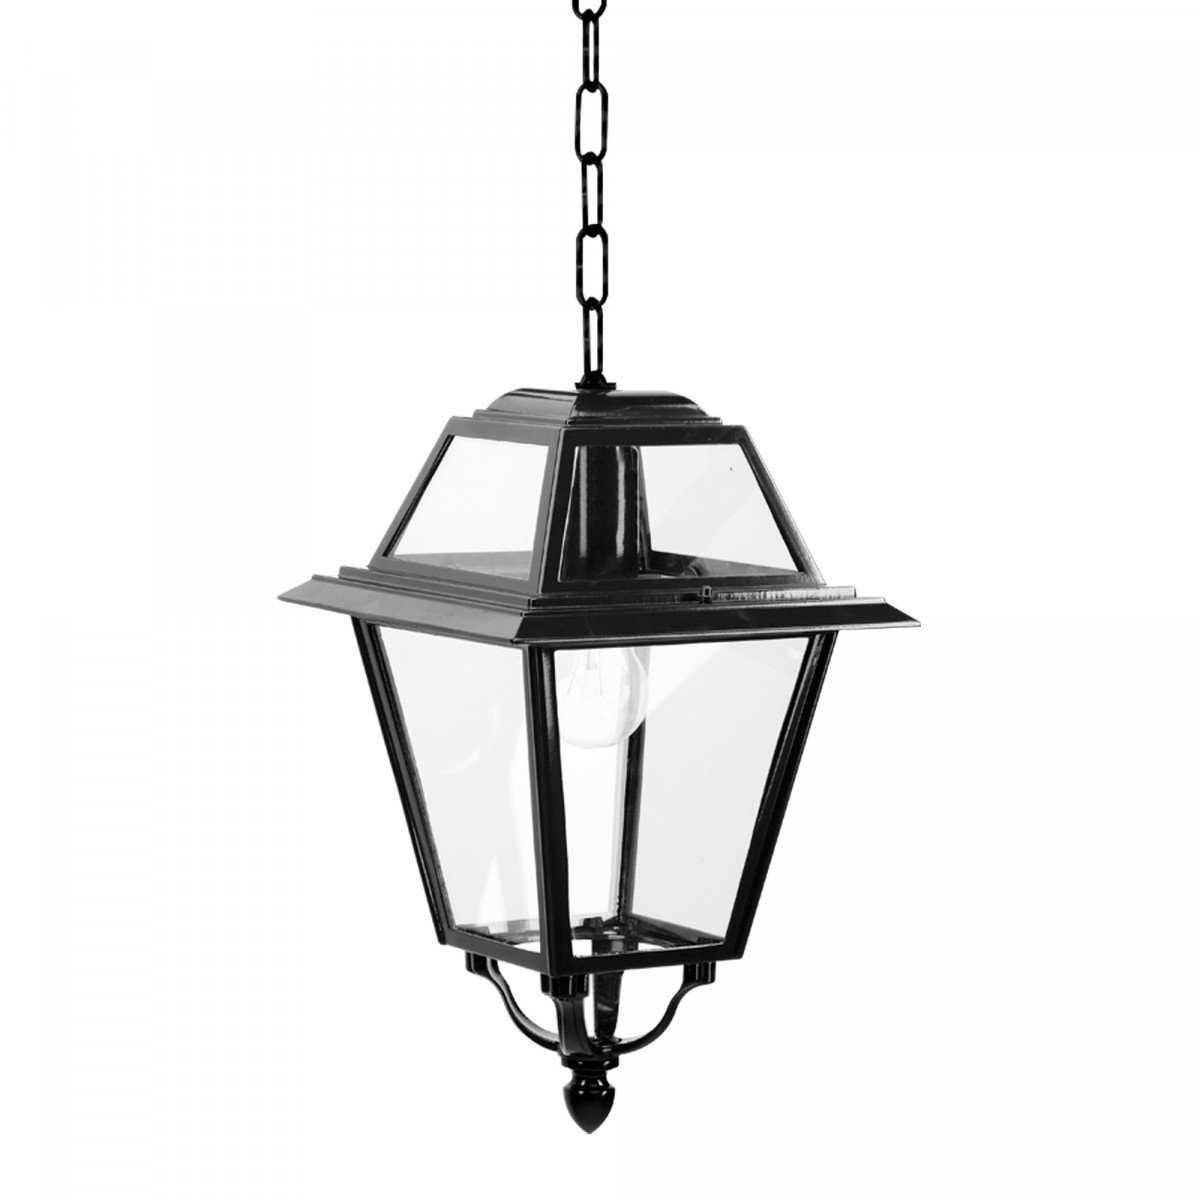 Lampe d'extérieur à chaîne KS K14A (1516) lanterne vitrée carrée